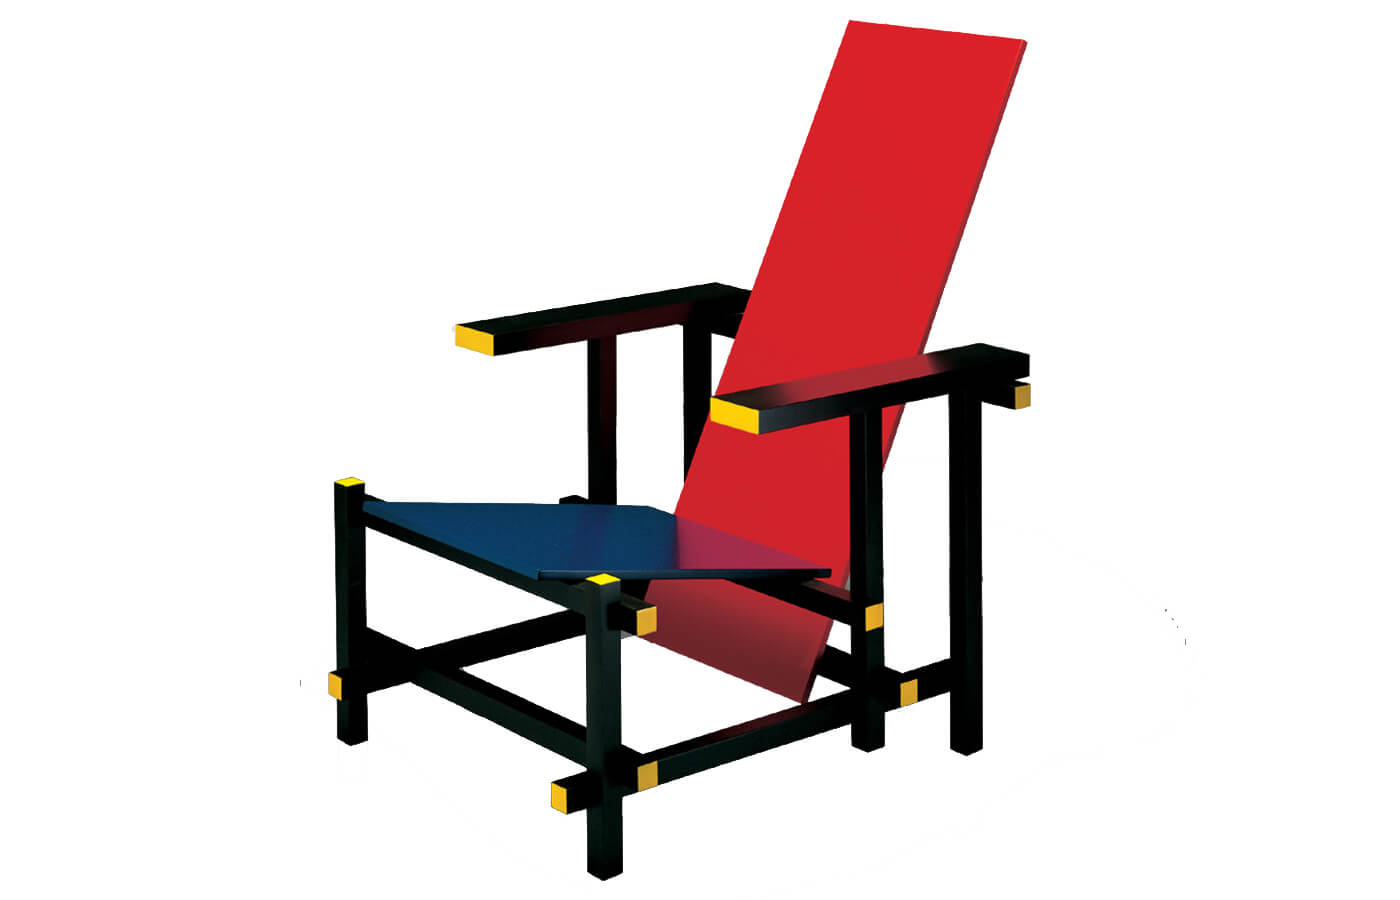 Sedia rossa e blu di Gerrit Rietveld esprime i principi del Neoplasticismo